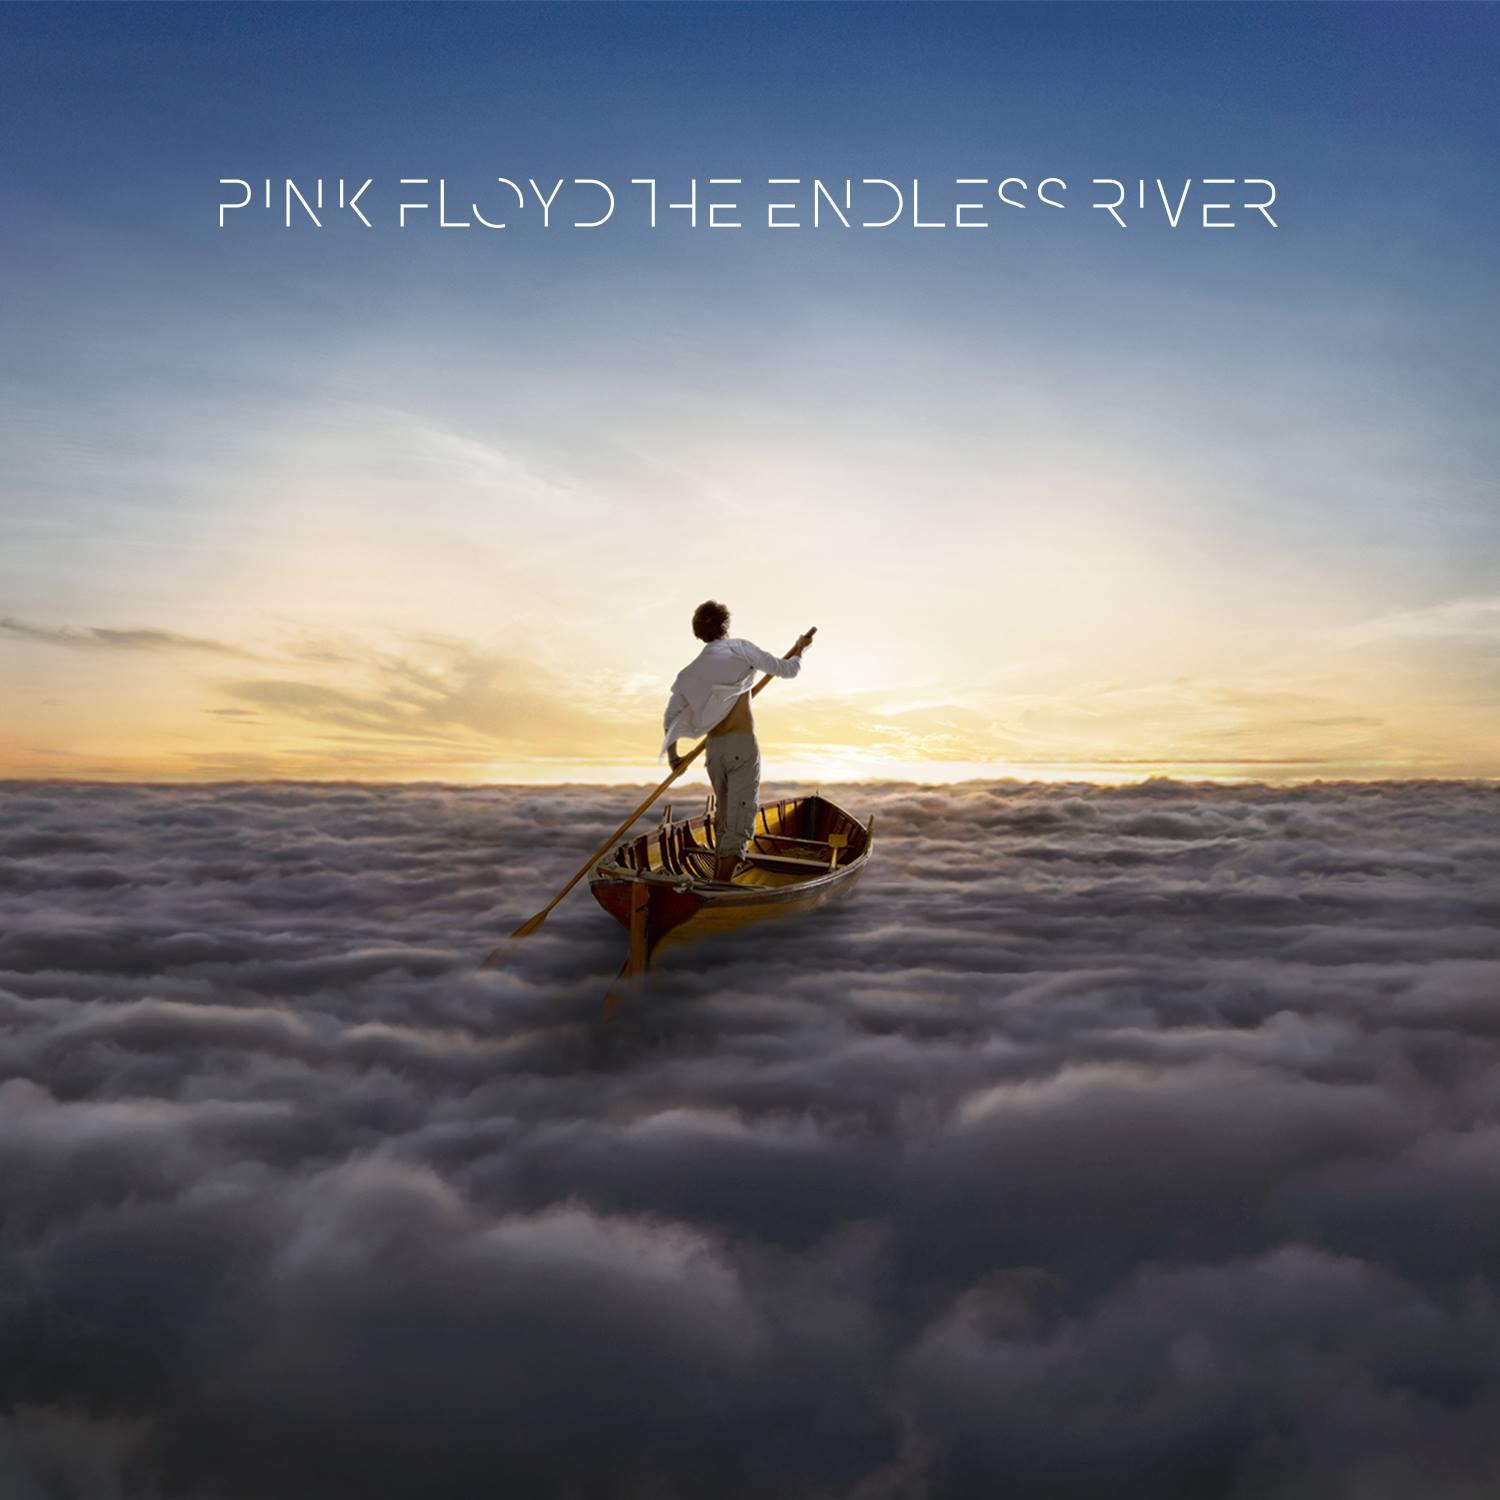 PINK FLOYD revient avec un titre en français : "Allons-y"